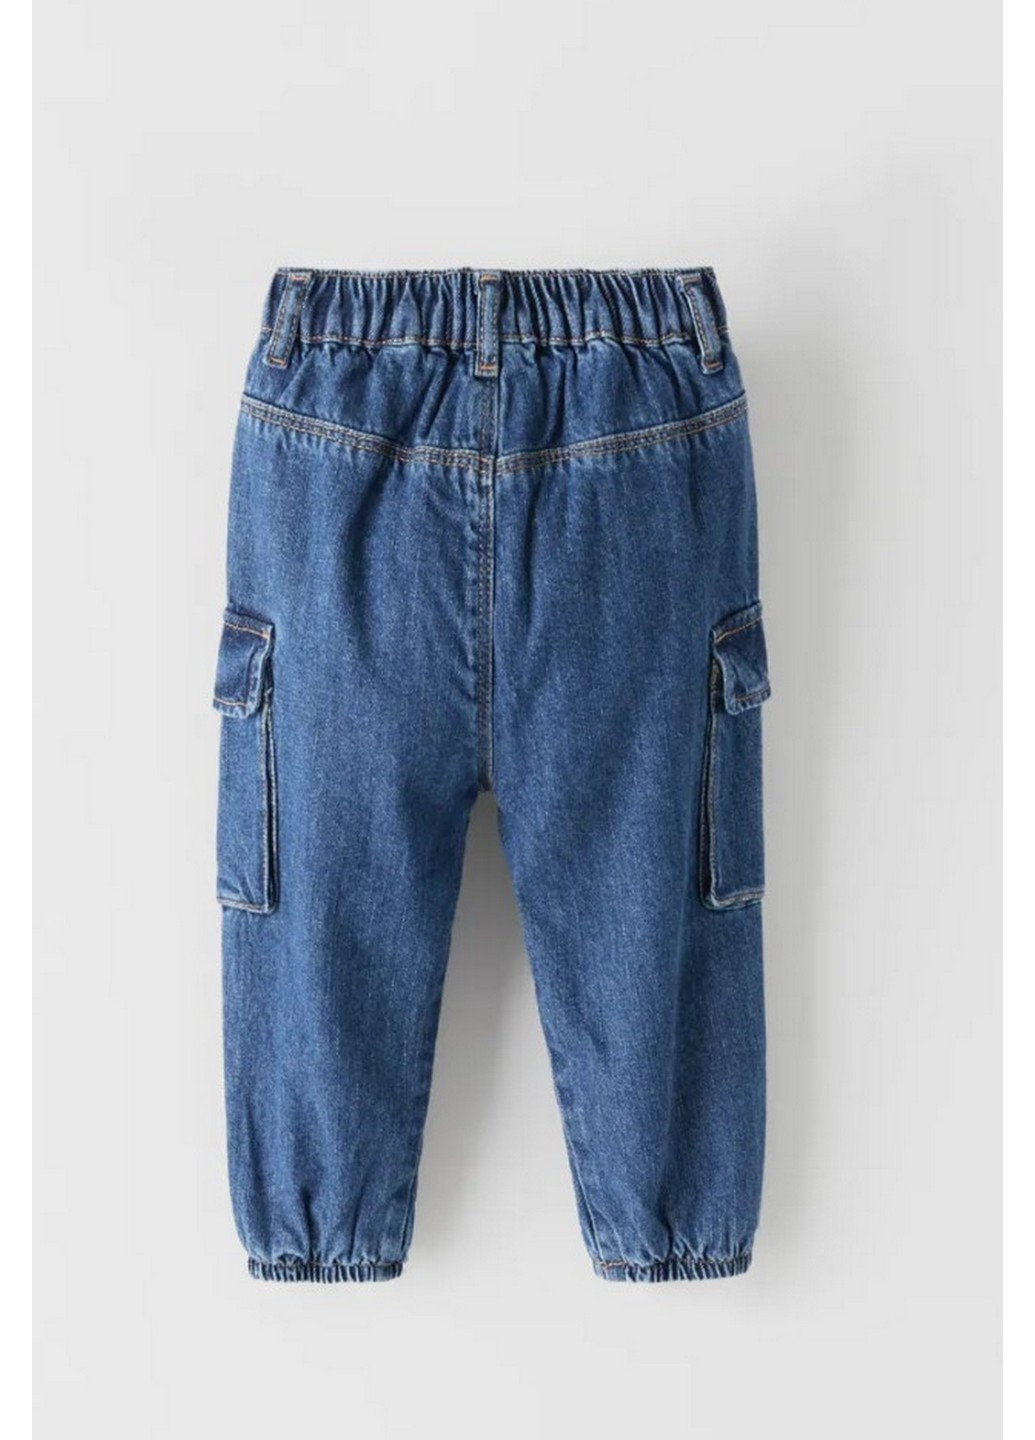 Синие демисезонные джинсы карго на мальчика Zara